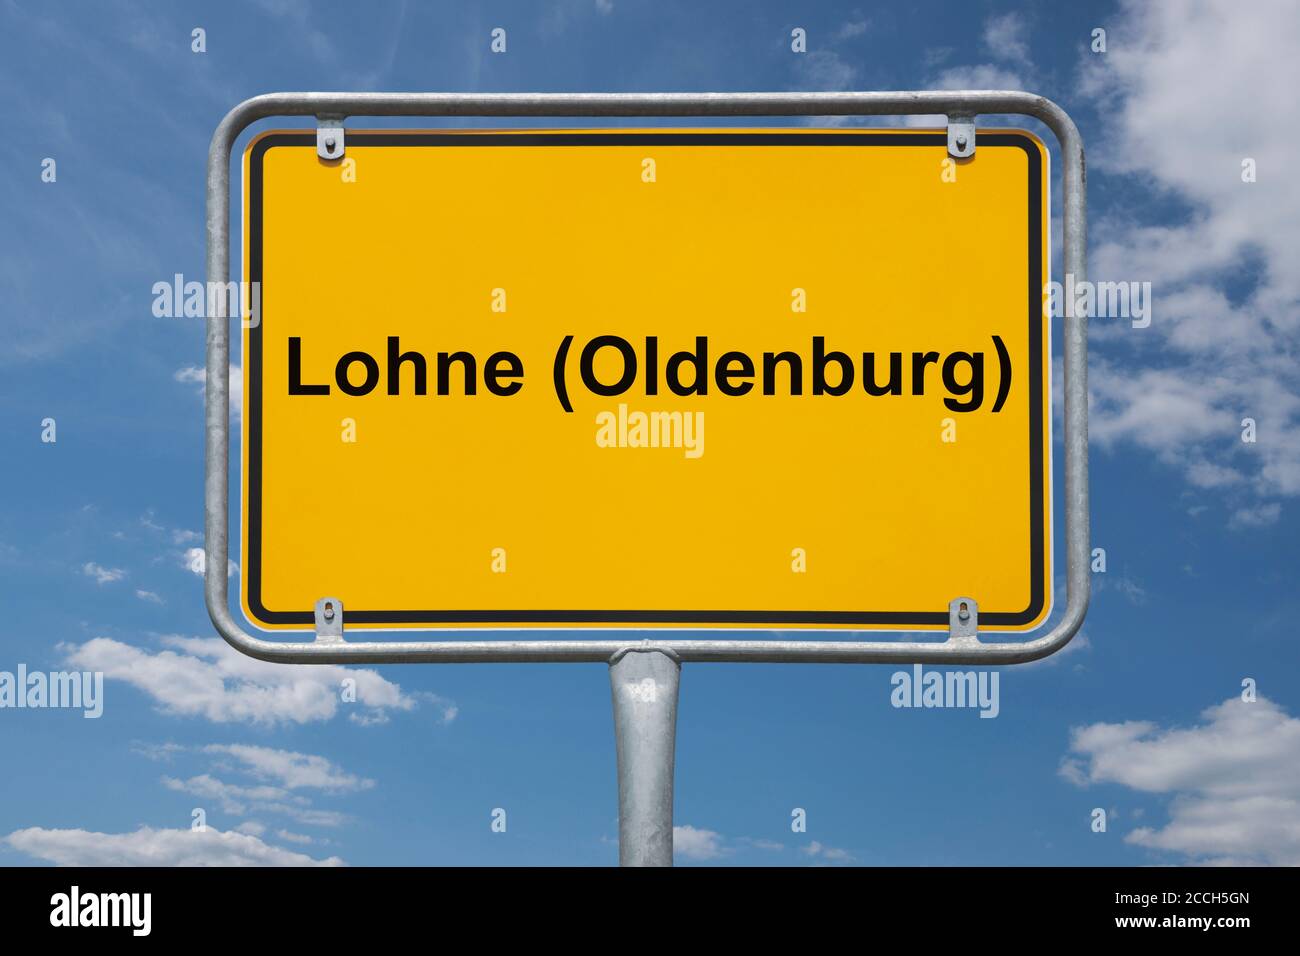 Ortstafel Lohne (Oldenburg), Niedersachsen, Deutschland | Place name sign Lohne (Oldenburg), Lower Saxony, Germany, Europe Stock Photo